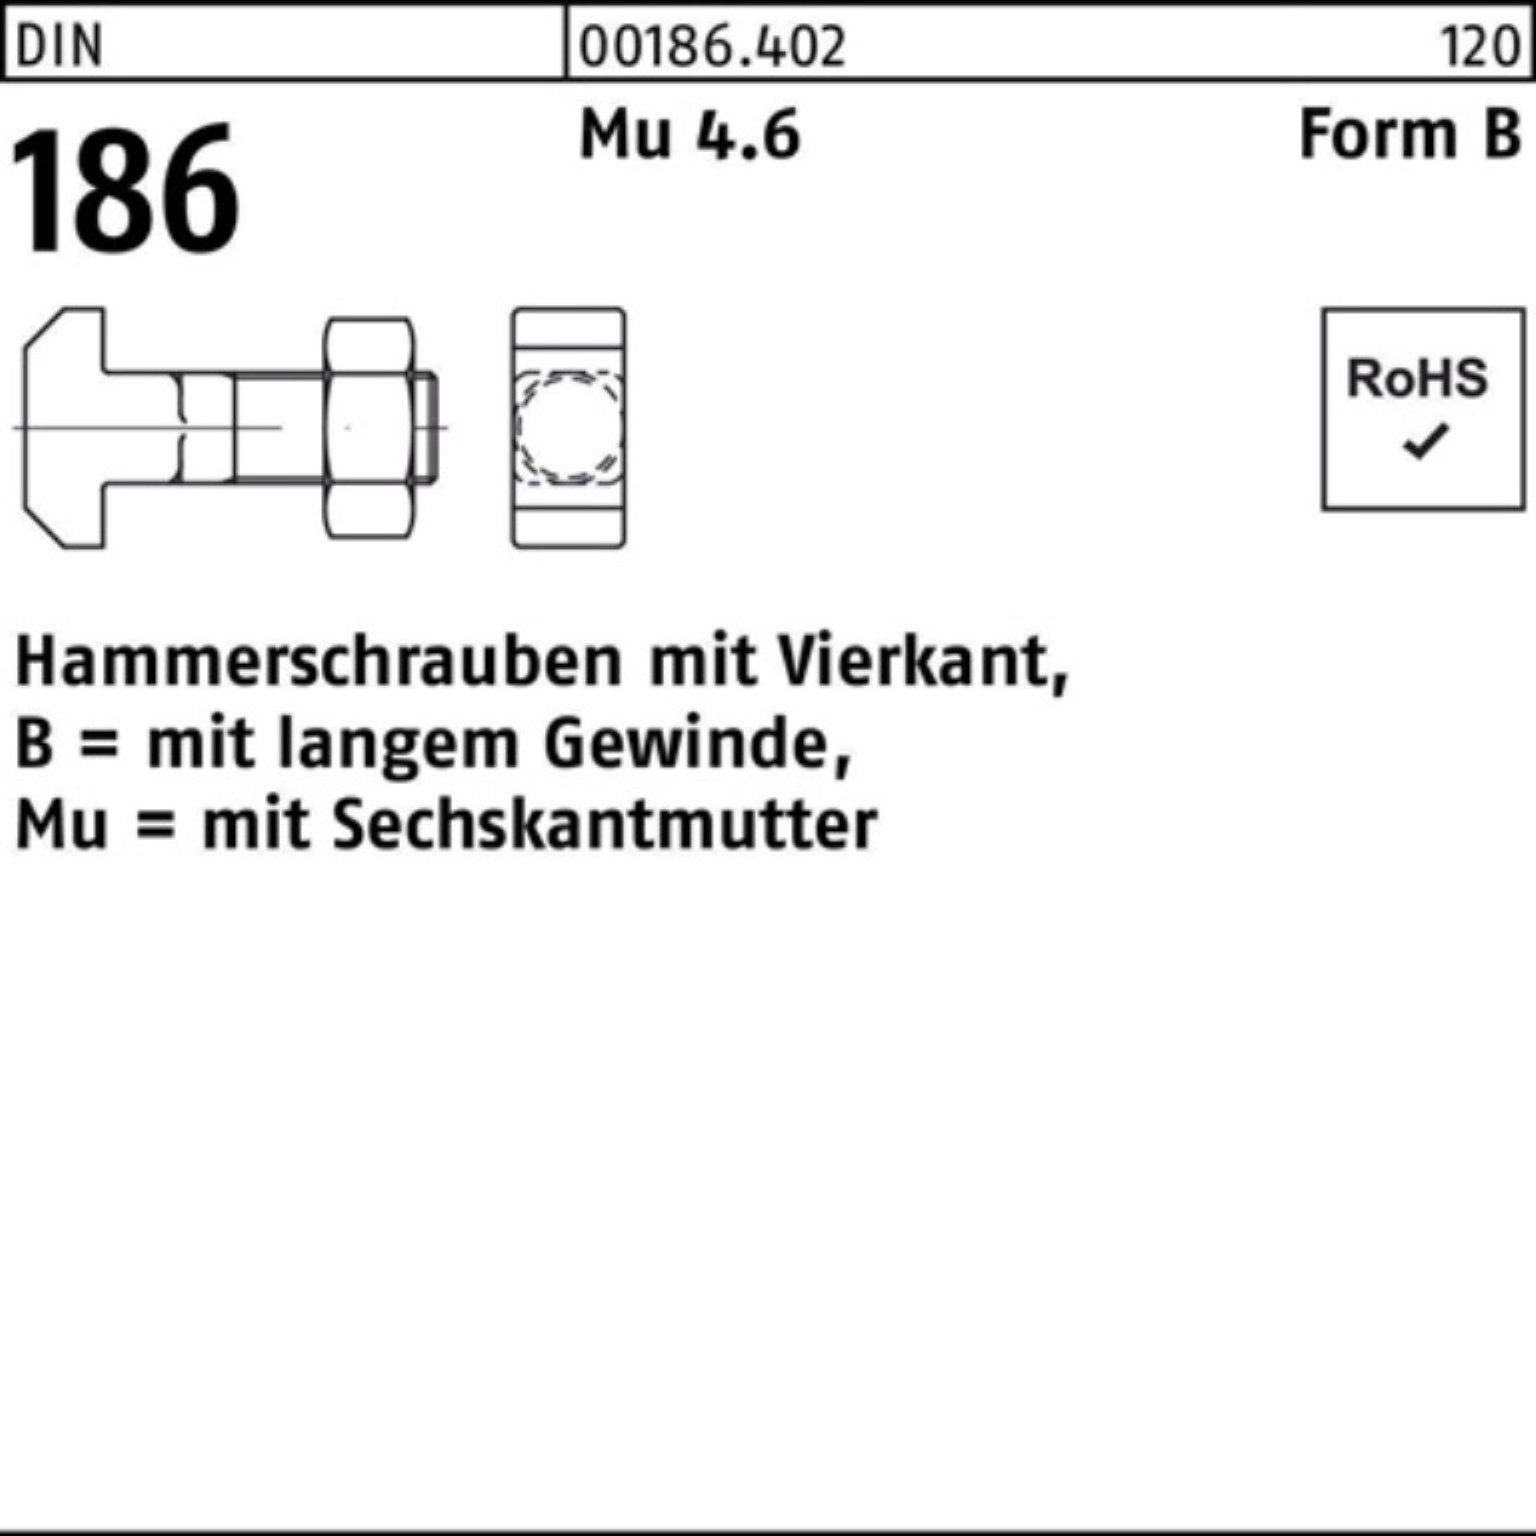 Reyher Schraube 100er Pack Hammerschraube DIN 186 FormB Vierkant 6-ktmutter BM 8x 35 M